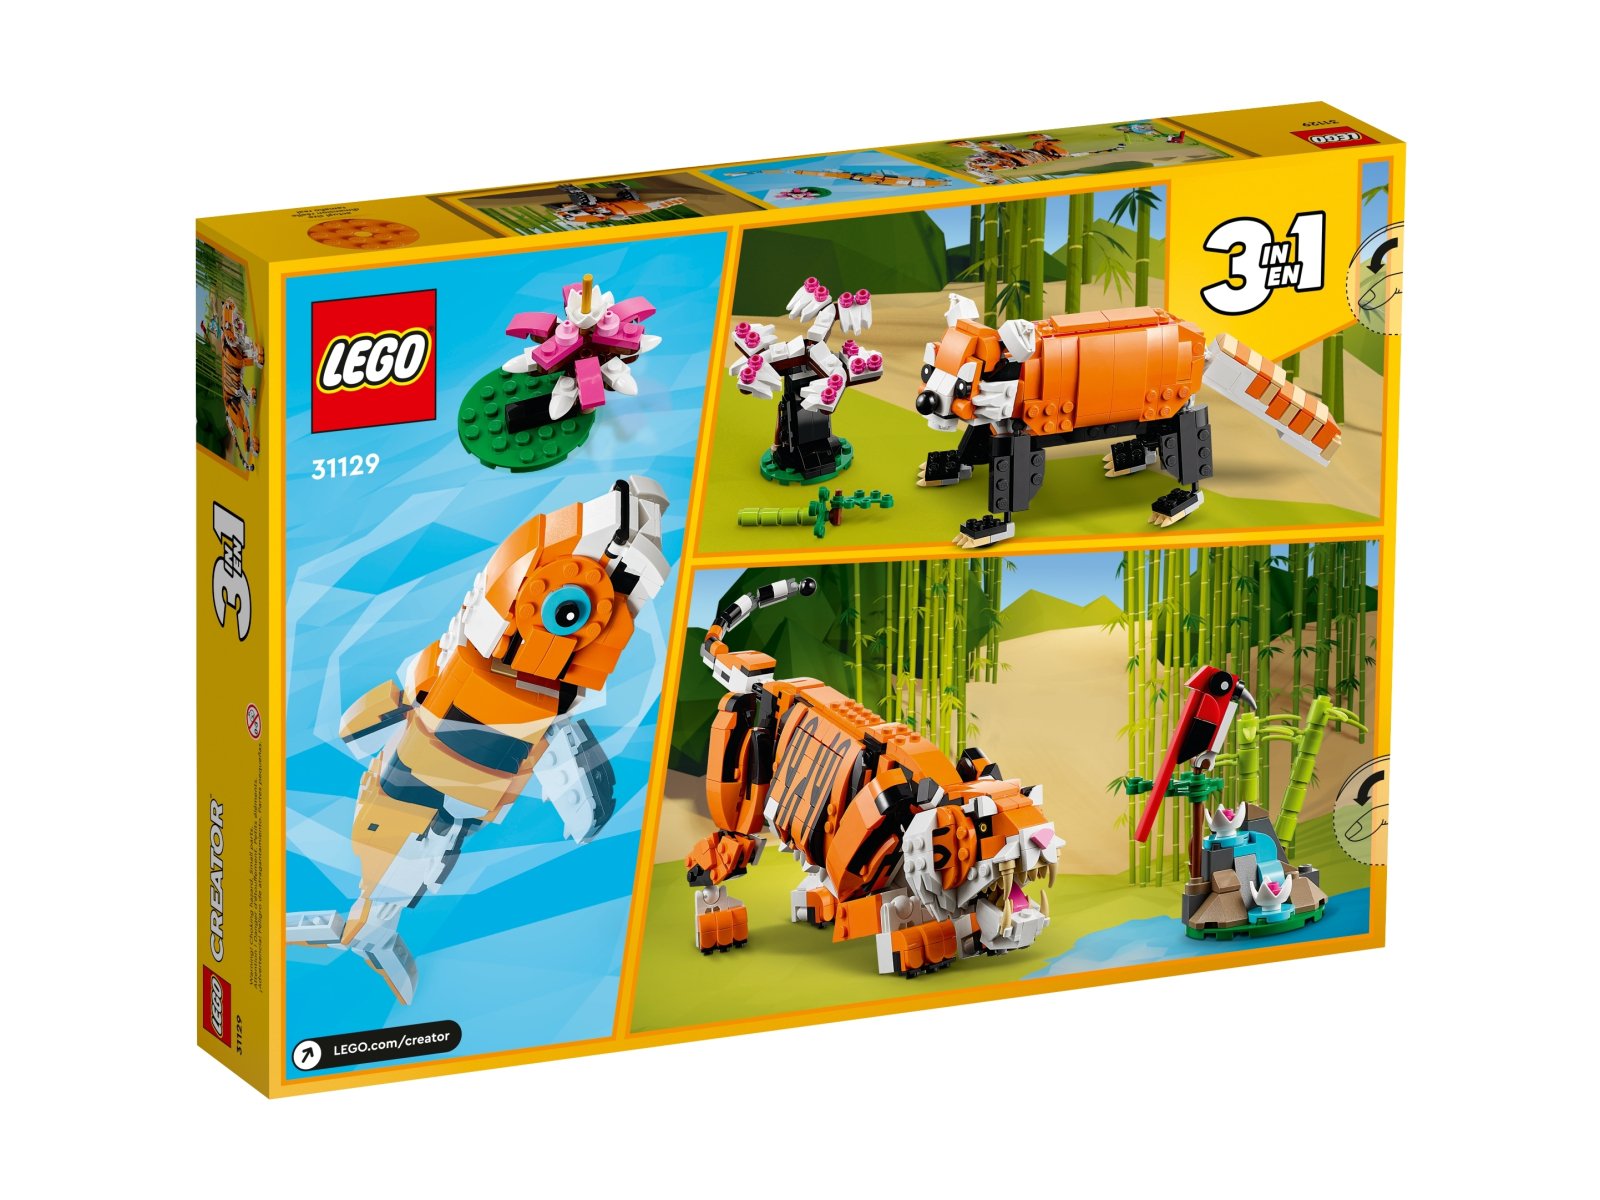 LEGO Creator 3 w 1 31129 Majestatyczny tygrys